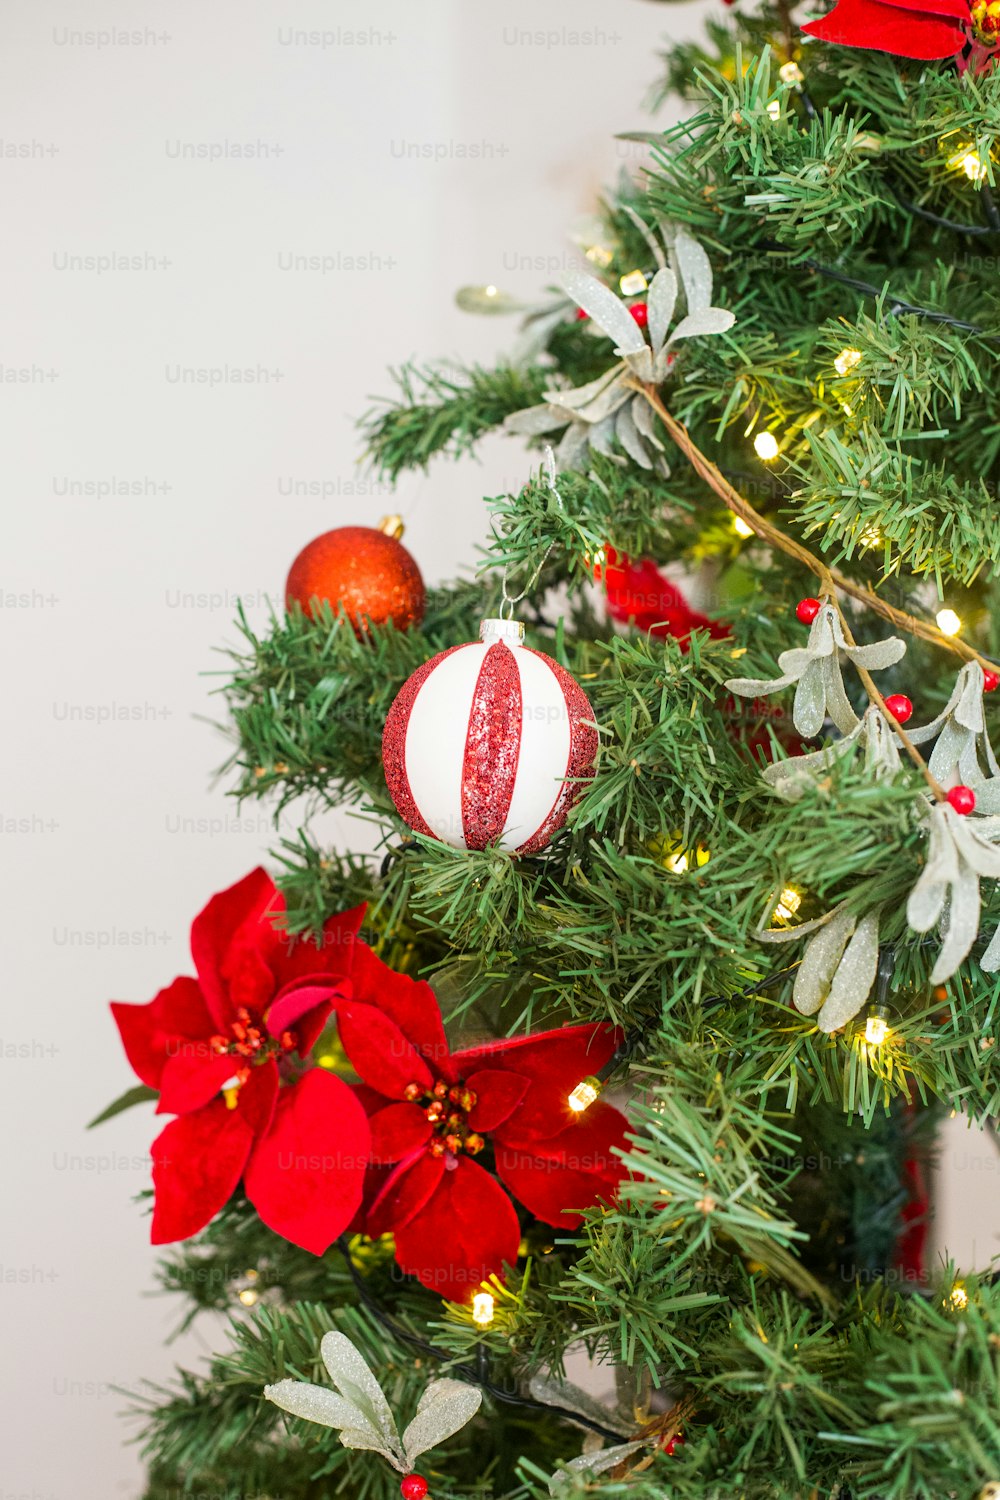 Un árbol de Navidad decorado con adornos rojos y blancos